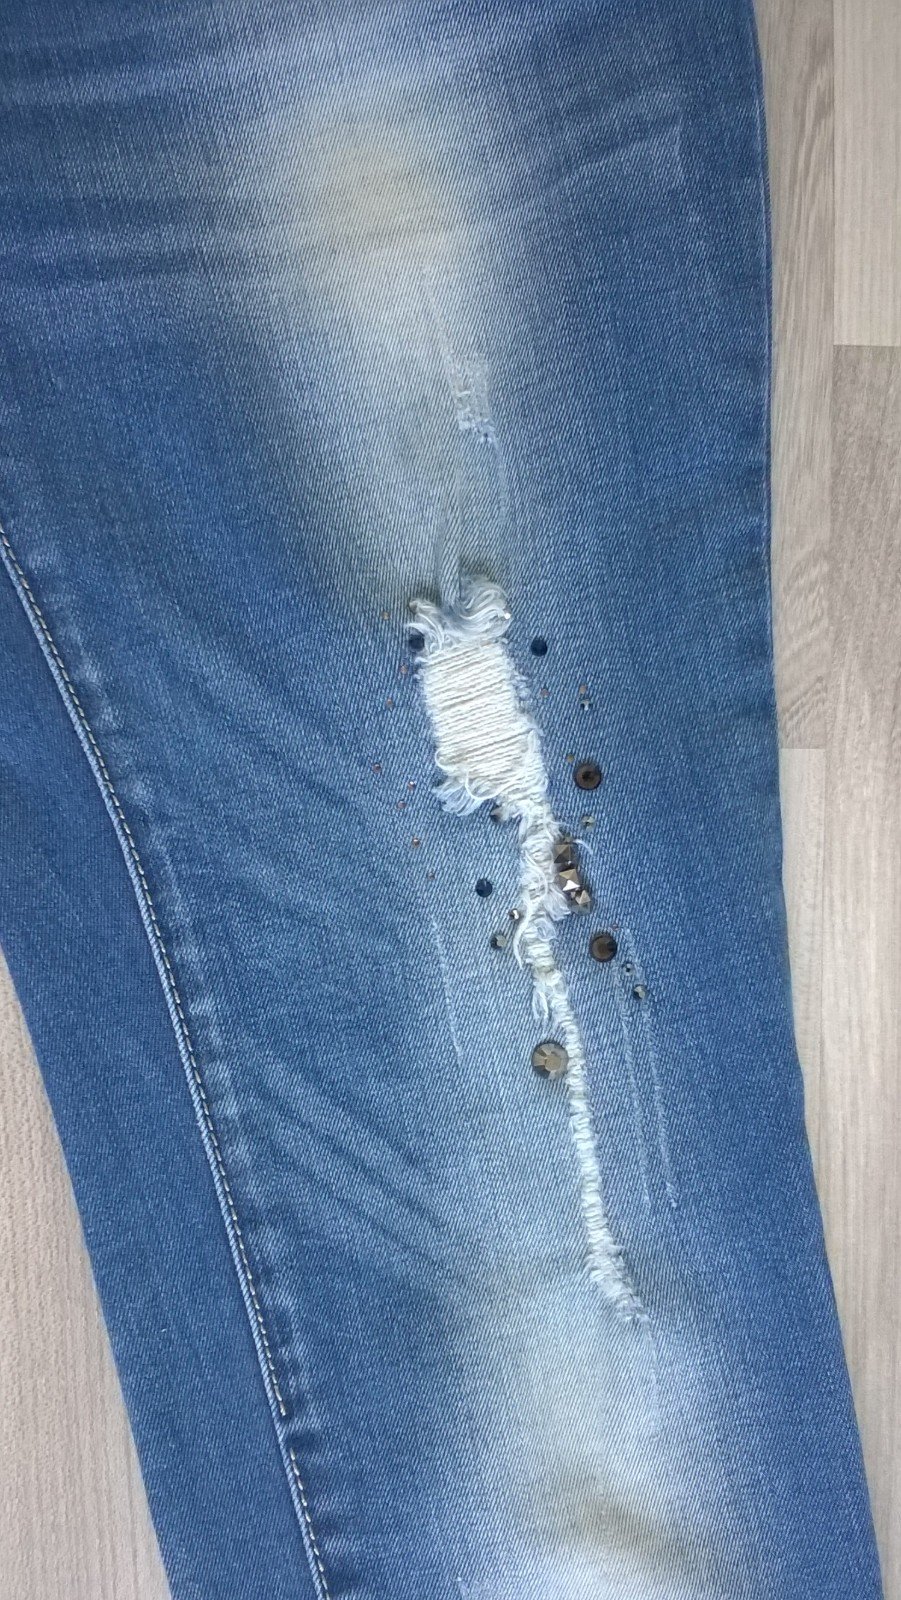 Skinny Jeans Röhre Ripped Hose destroyed blau mit Steinen Ker-bix-ker forever